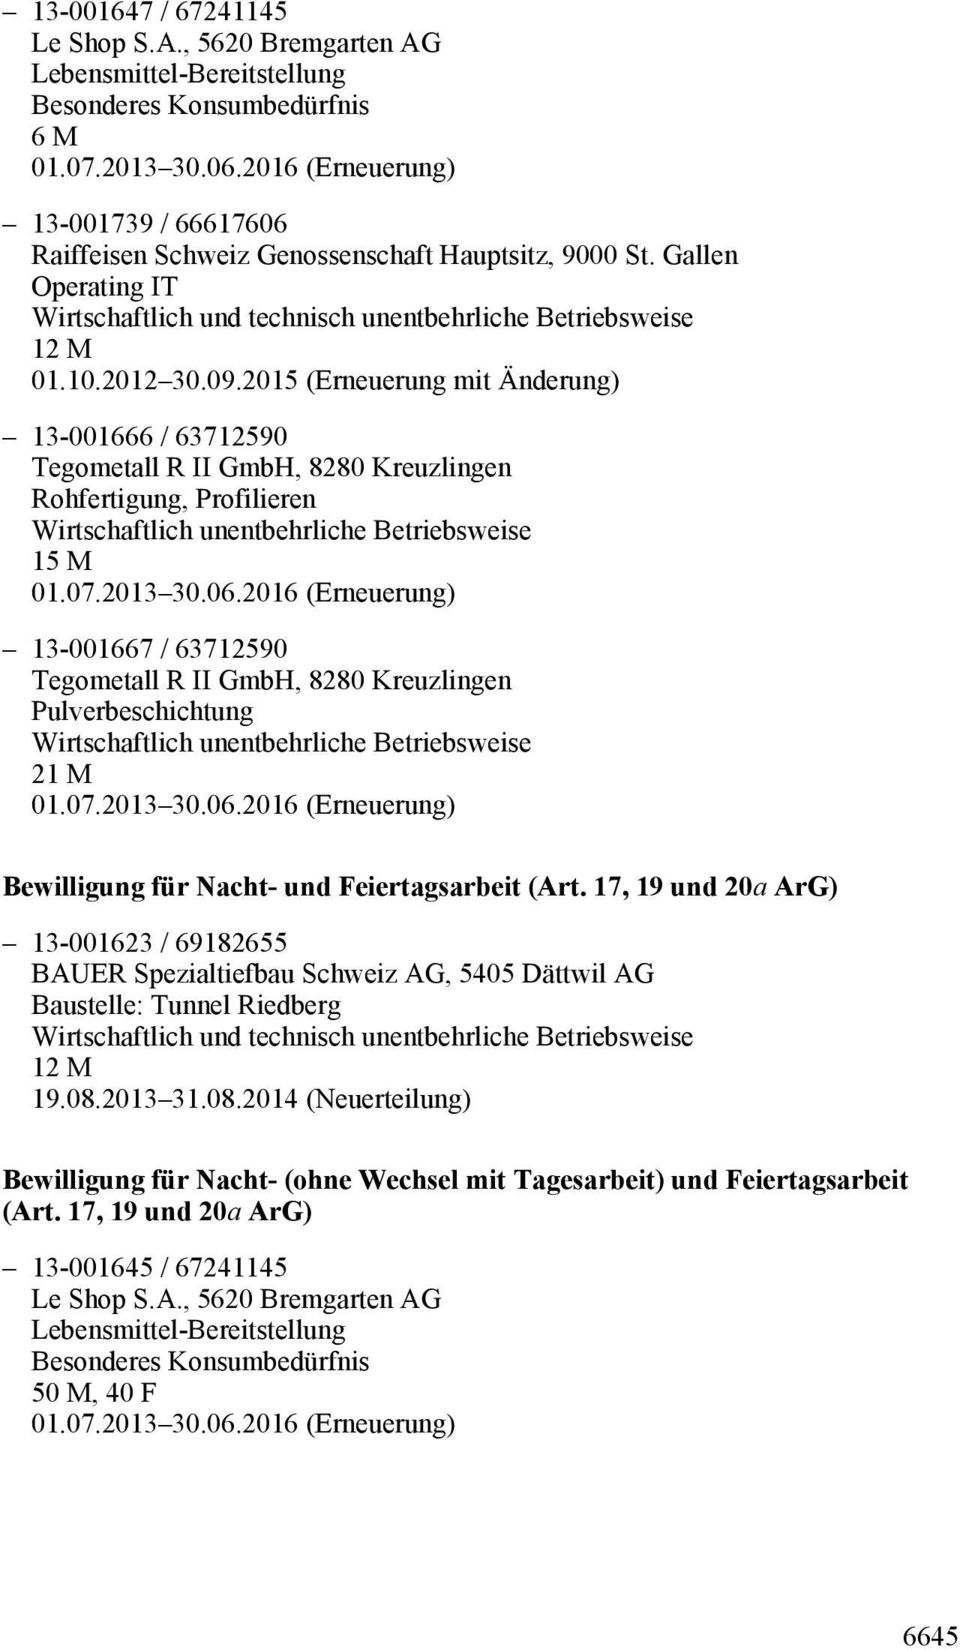 Pulverbeschichtung 21 M Bewilligung für Nacht- und Feiertagsarbeit (Art. 17, 19 und 20a ArG) 13-001623 / 69182655 BAUER Spezialtiefbau Schweiz AG, 5405 Dättwil AG Baustelle: Tunnel Riedberg 19.08.